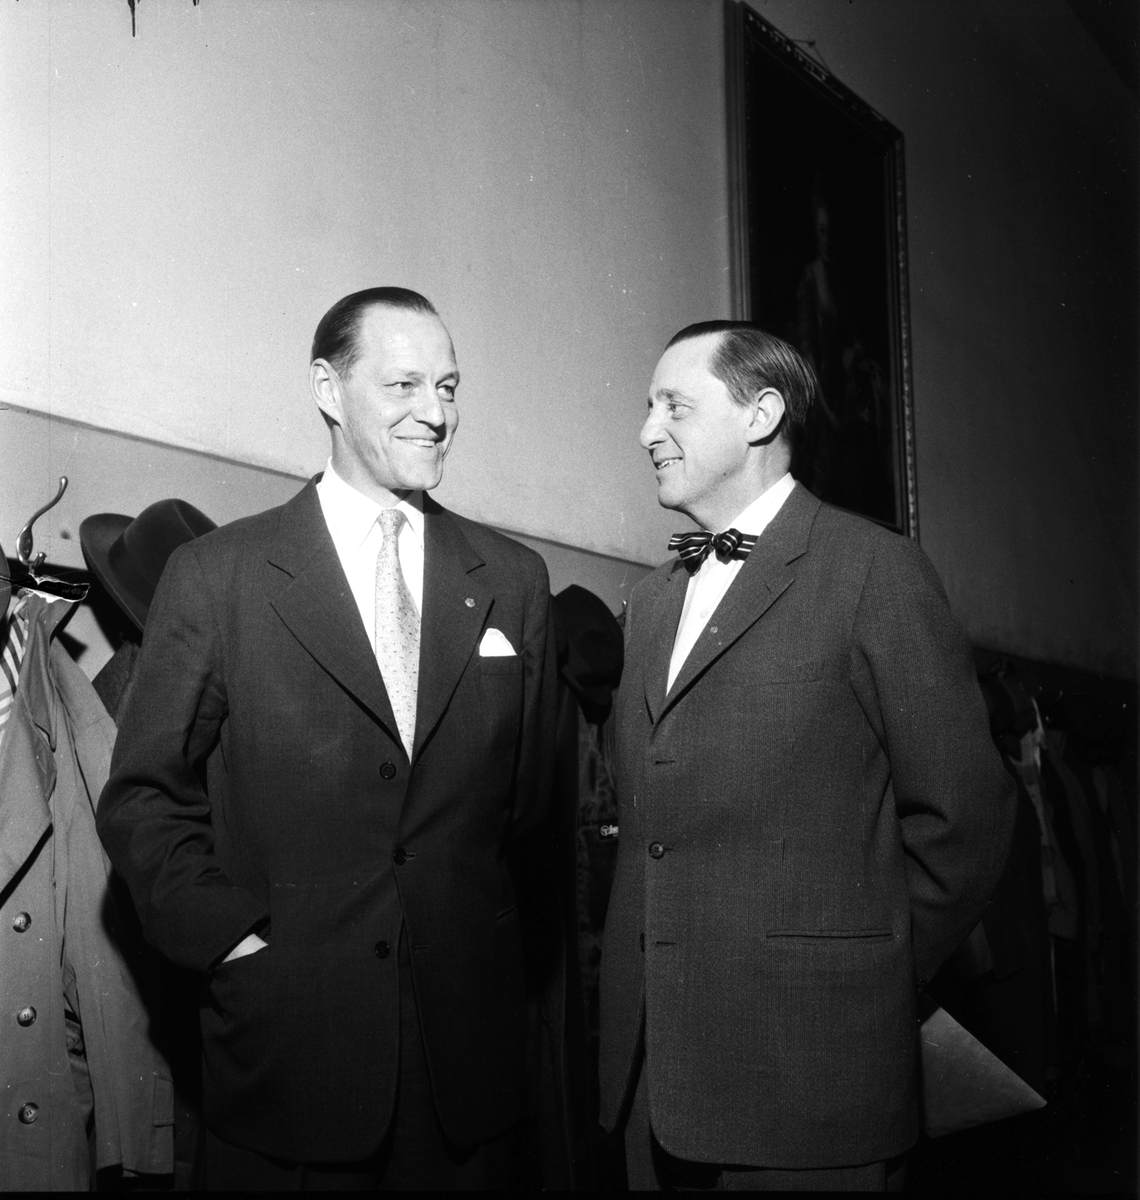 Jarl Hjalmarsson till höger och Theodor Sandgren till vänster. Bild tagen i samband med valrörelsen 1958.